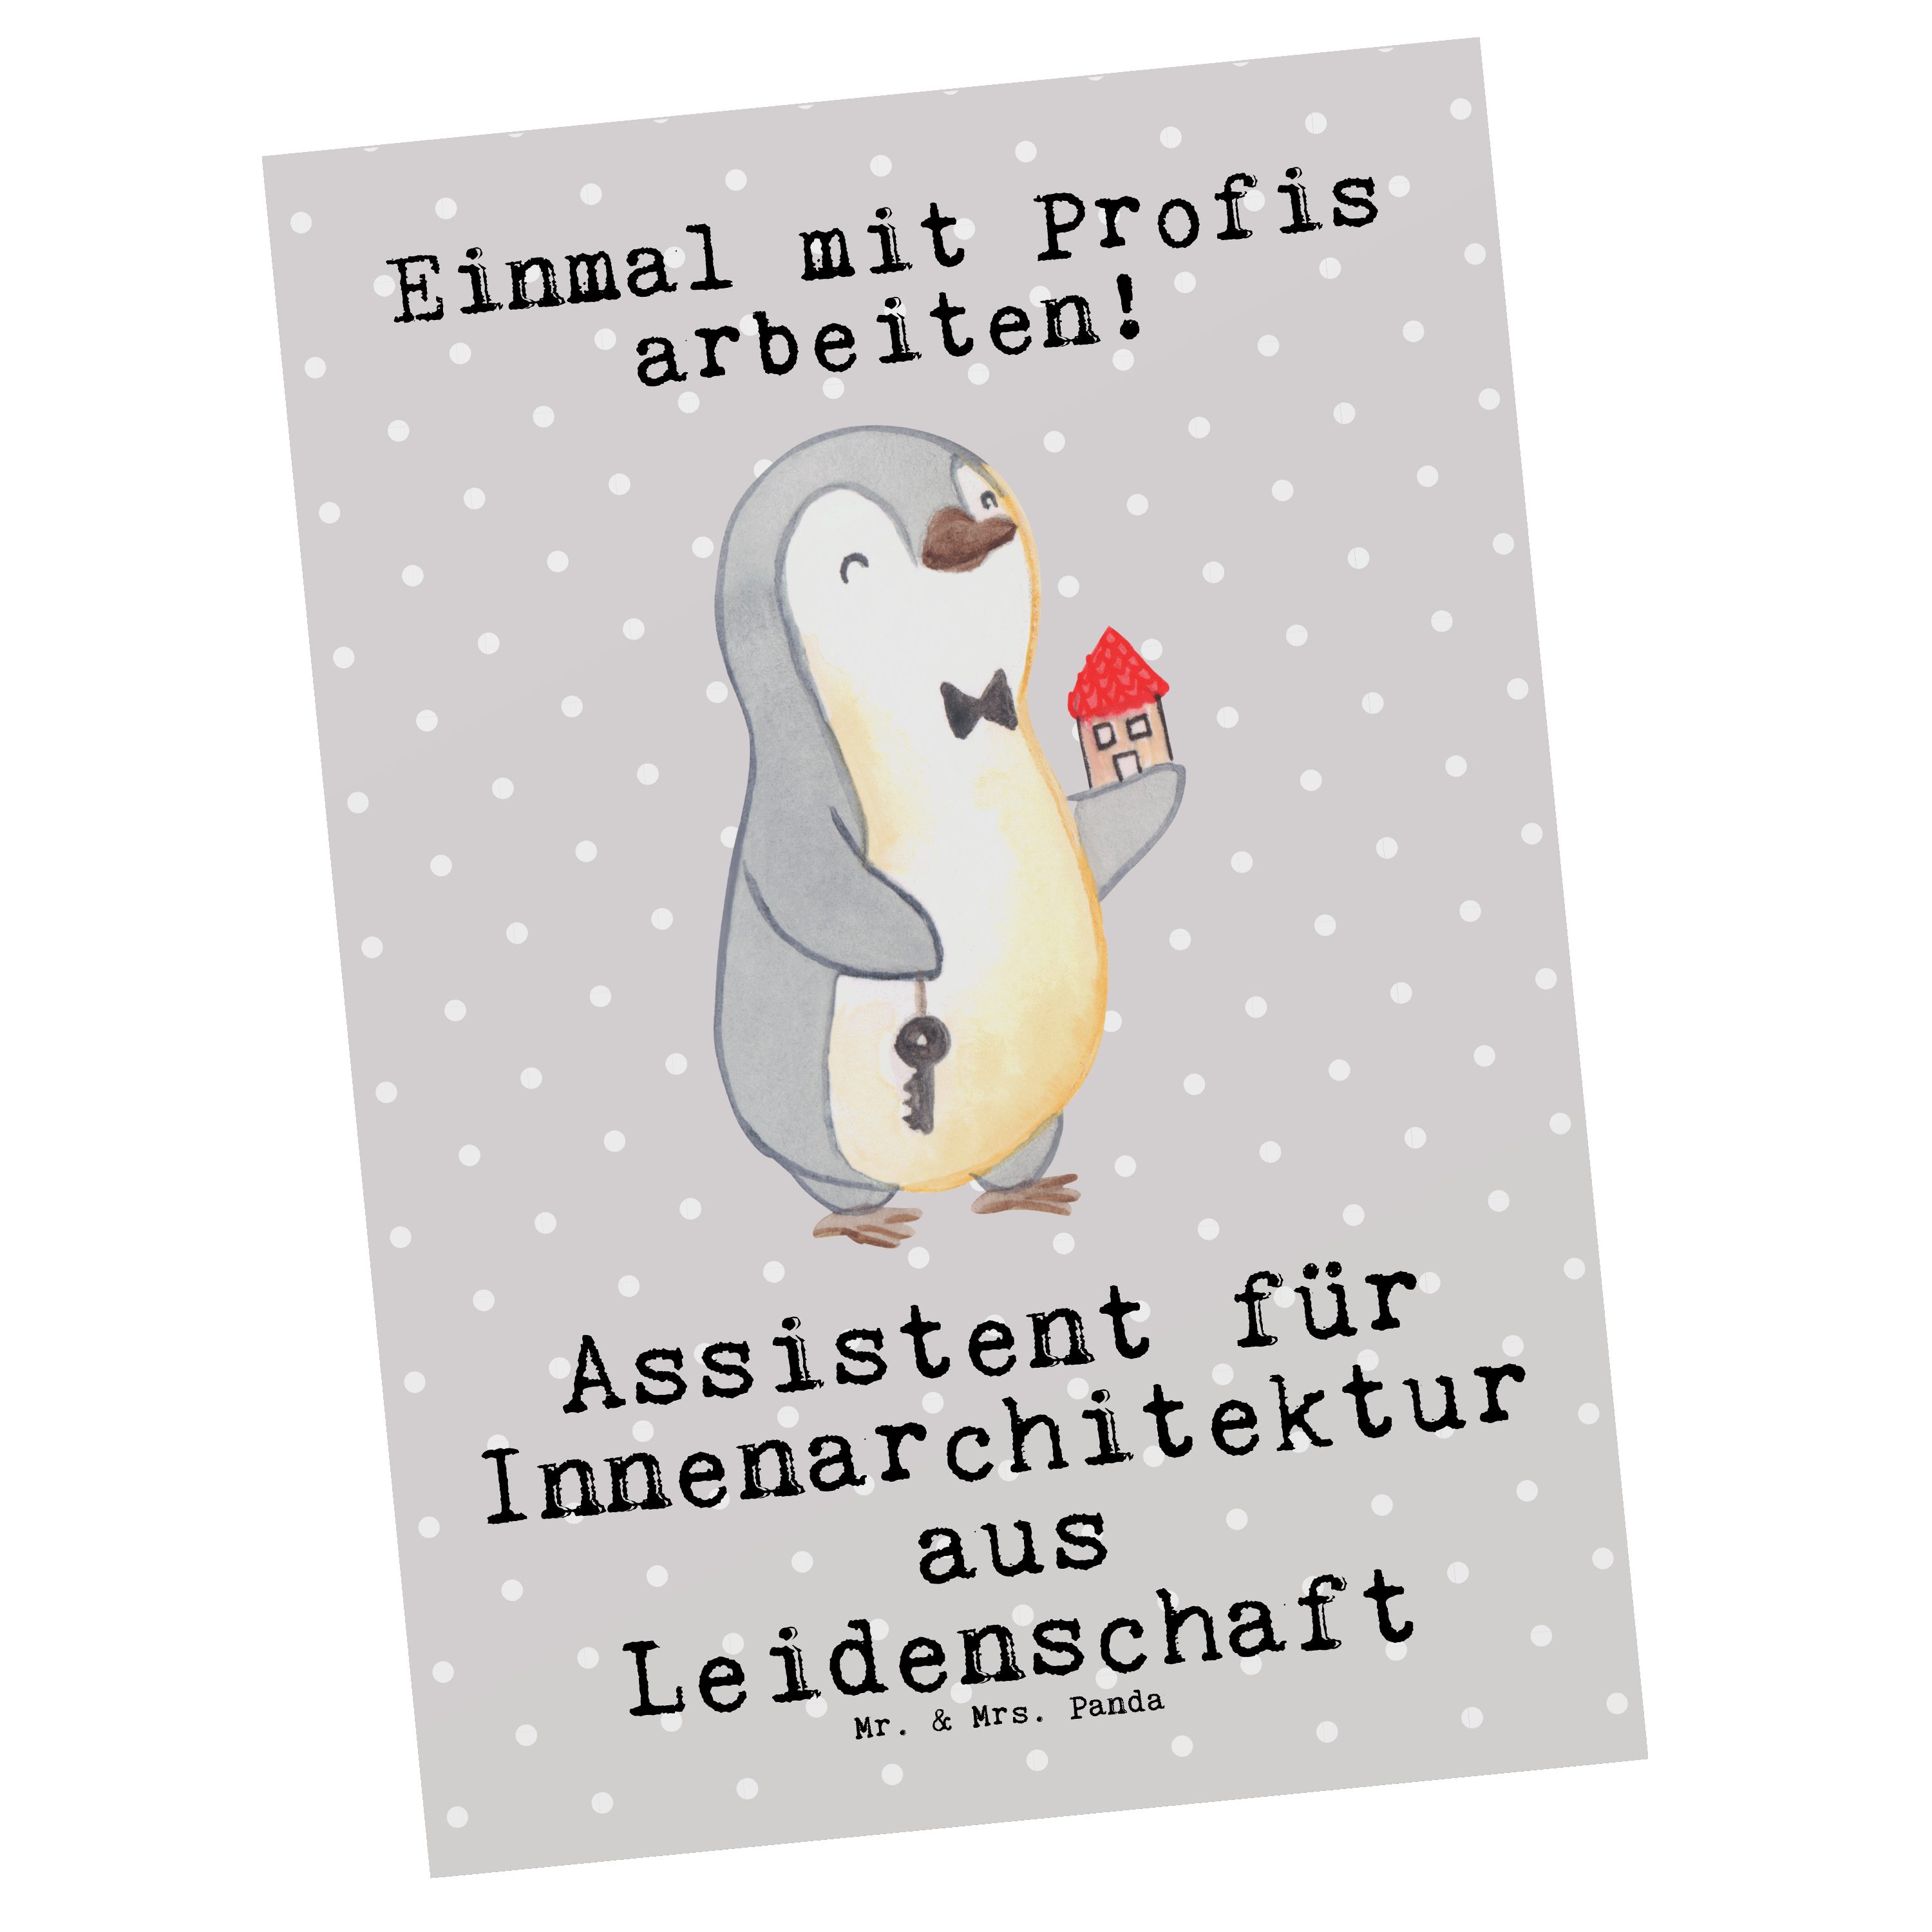 Mr. & Mrs. Panda Grau aus Postkarte Pastell - für - Gesc Assistent Leidenschaft Innenarchitektur